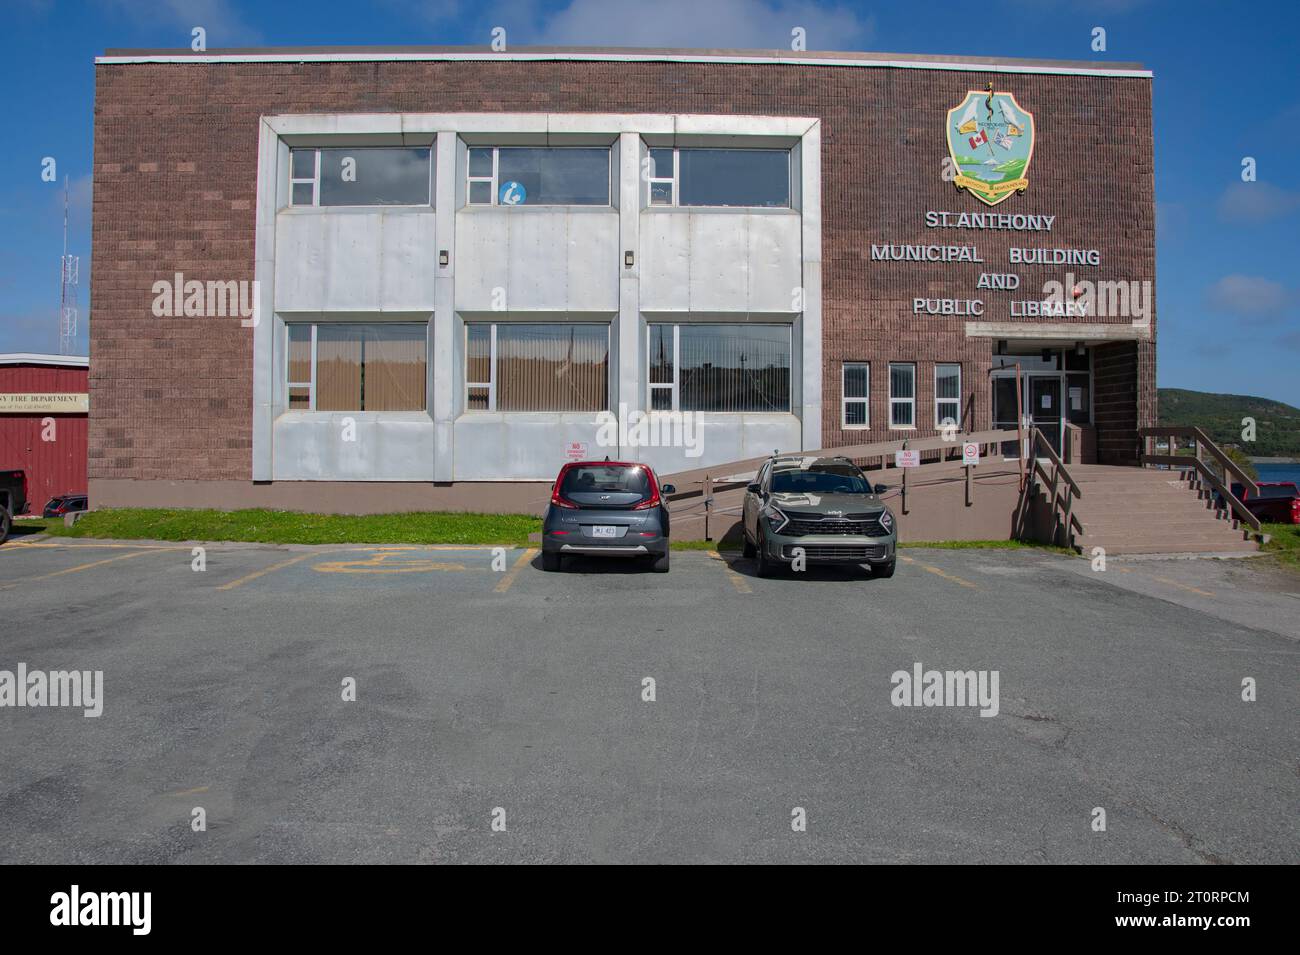 St. Bâtiment municipal et bibliothèque Anthony à Terre-Neuve-et-Labrador, Canada Banque D'Images